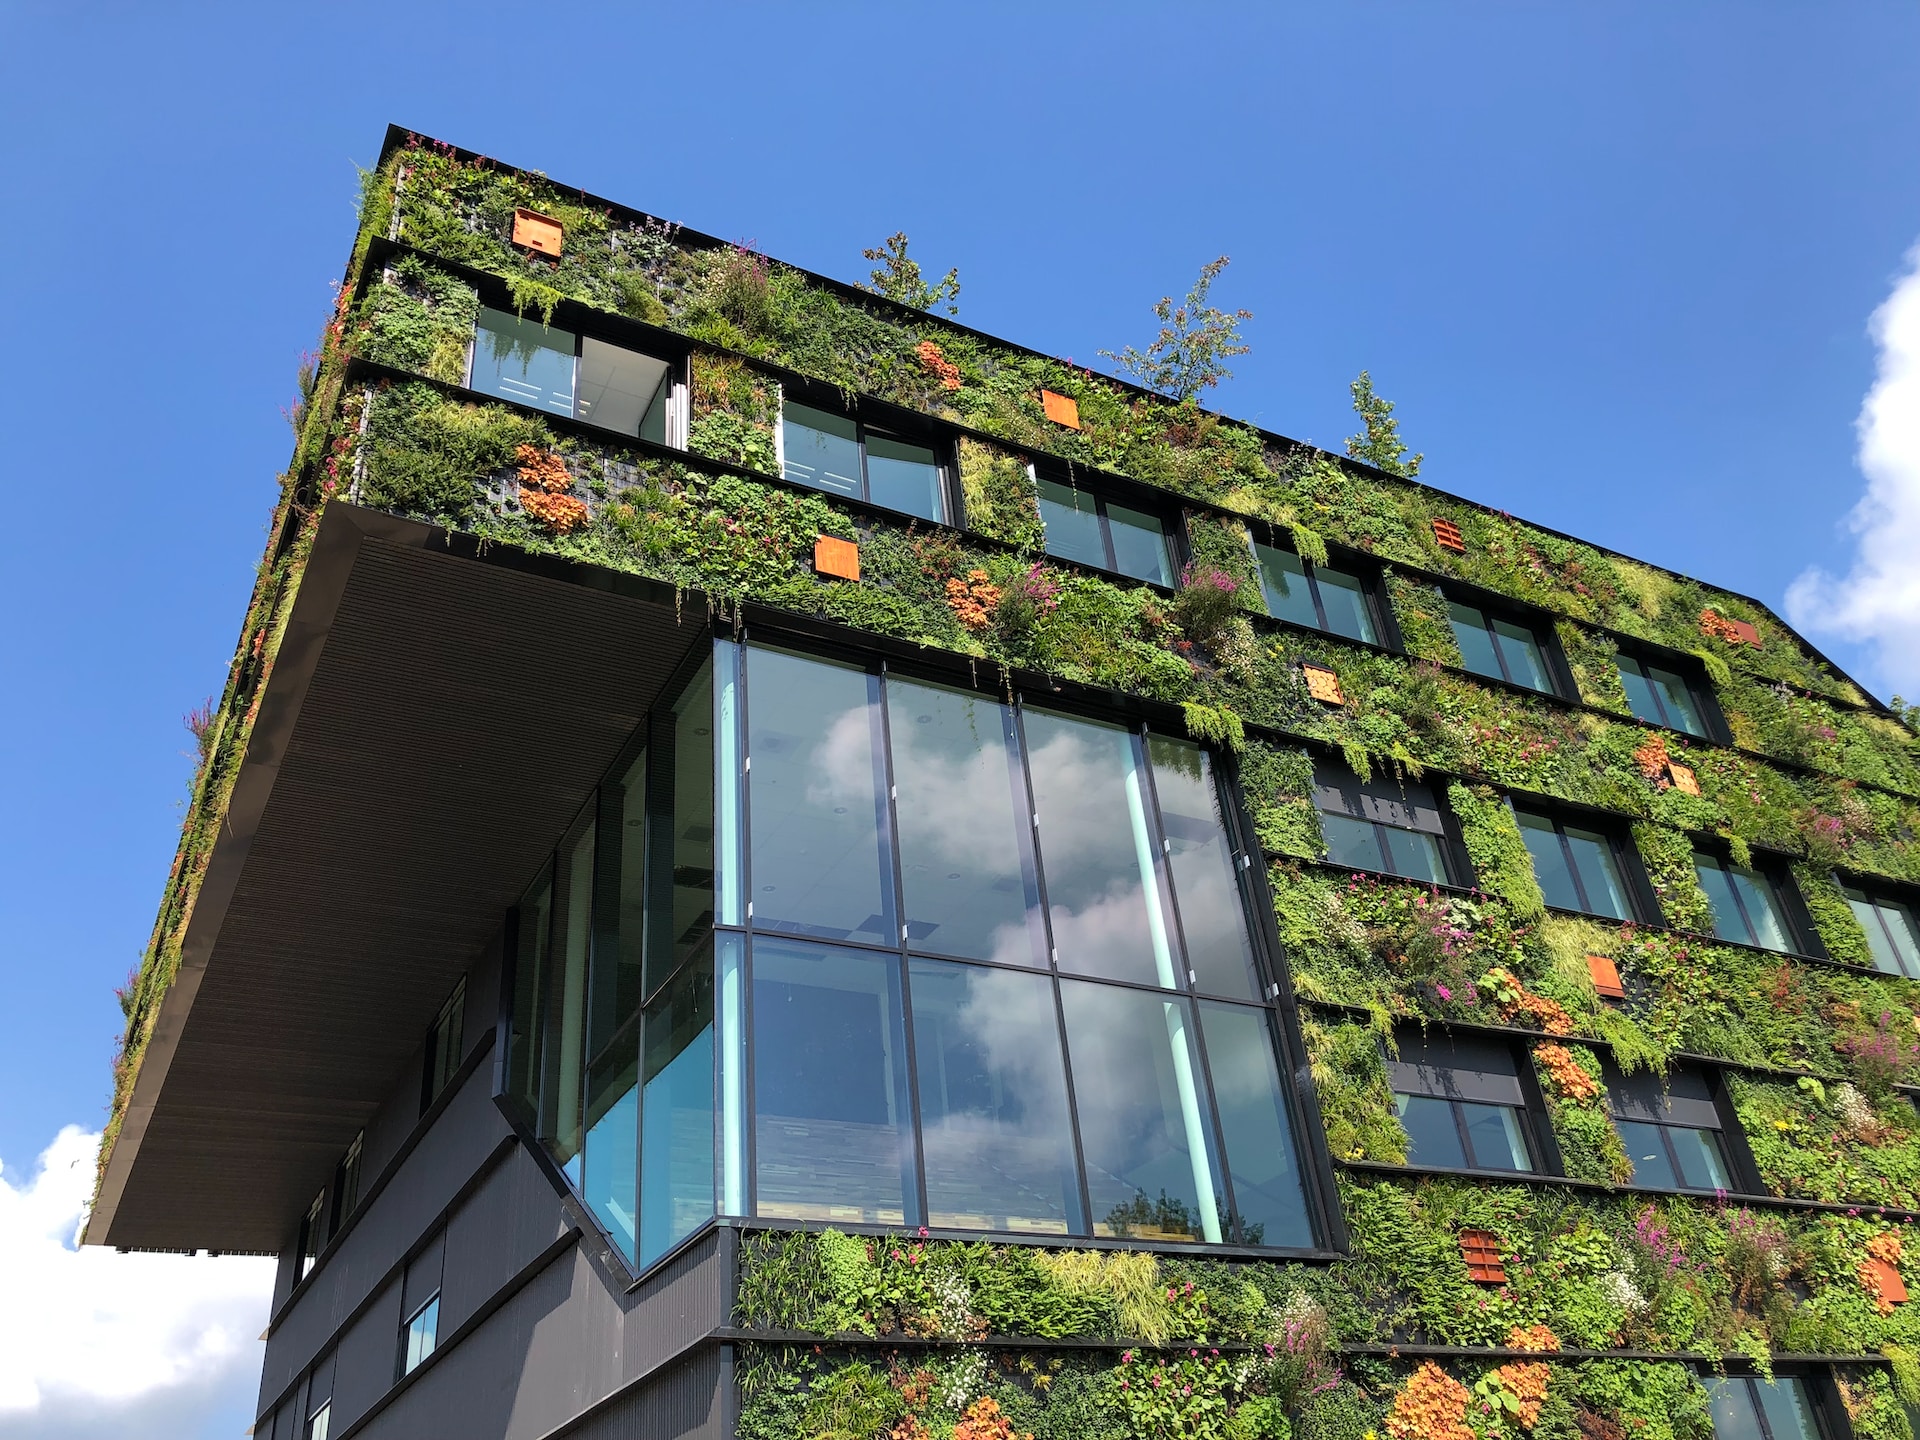 Dachbegrünung: Wie Berlin mit der Förderung von GründachPLUS dem Klimawandel begegnen will